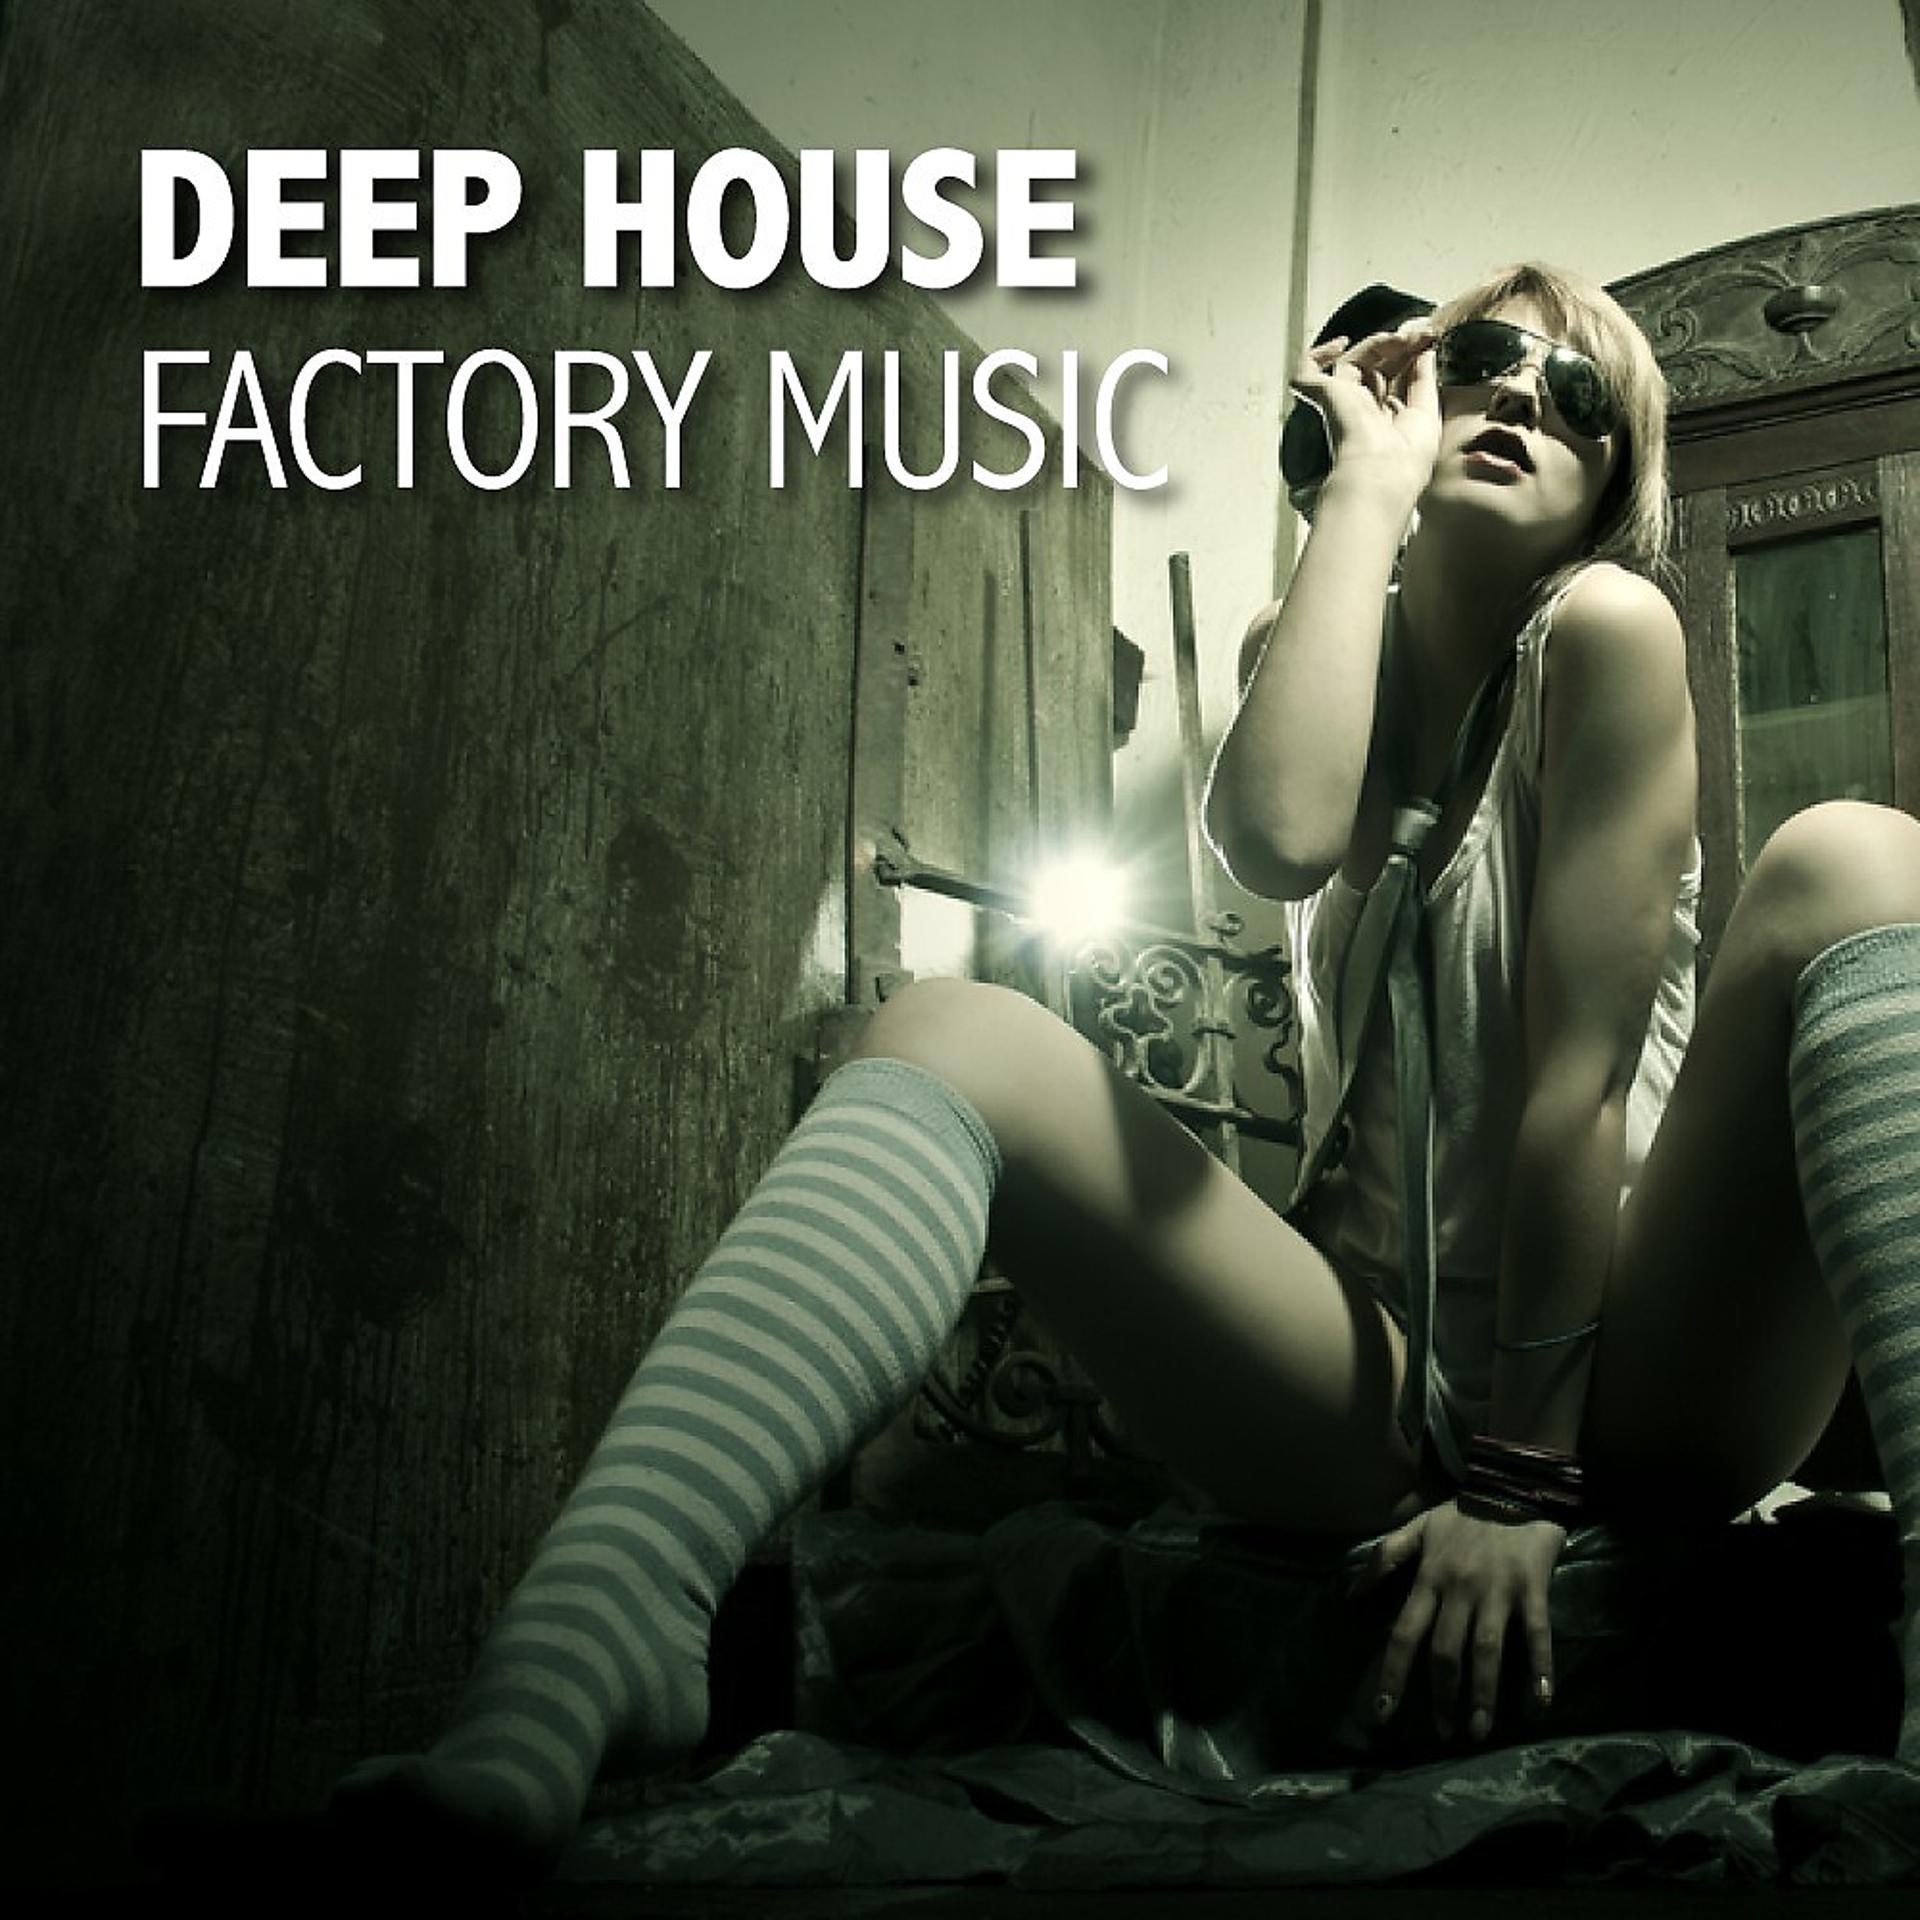 Слушать house music. Deep House. Обложки музыкальных альбомов дип Хаус. Картинки в стиле Deep House. Обложка для альбома дип Хаус.